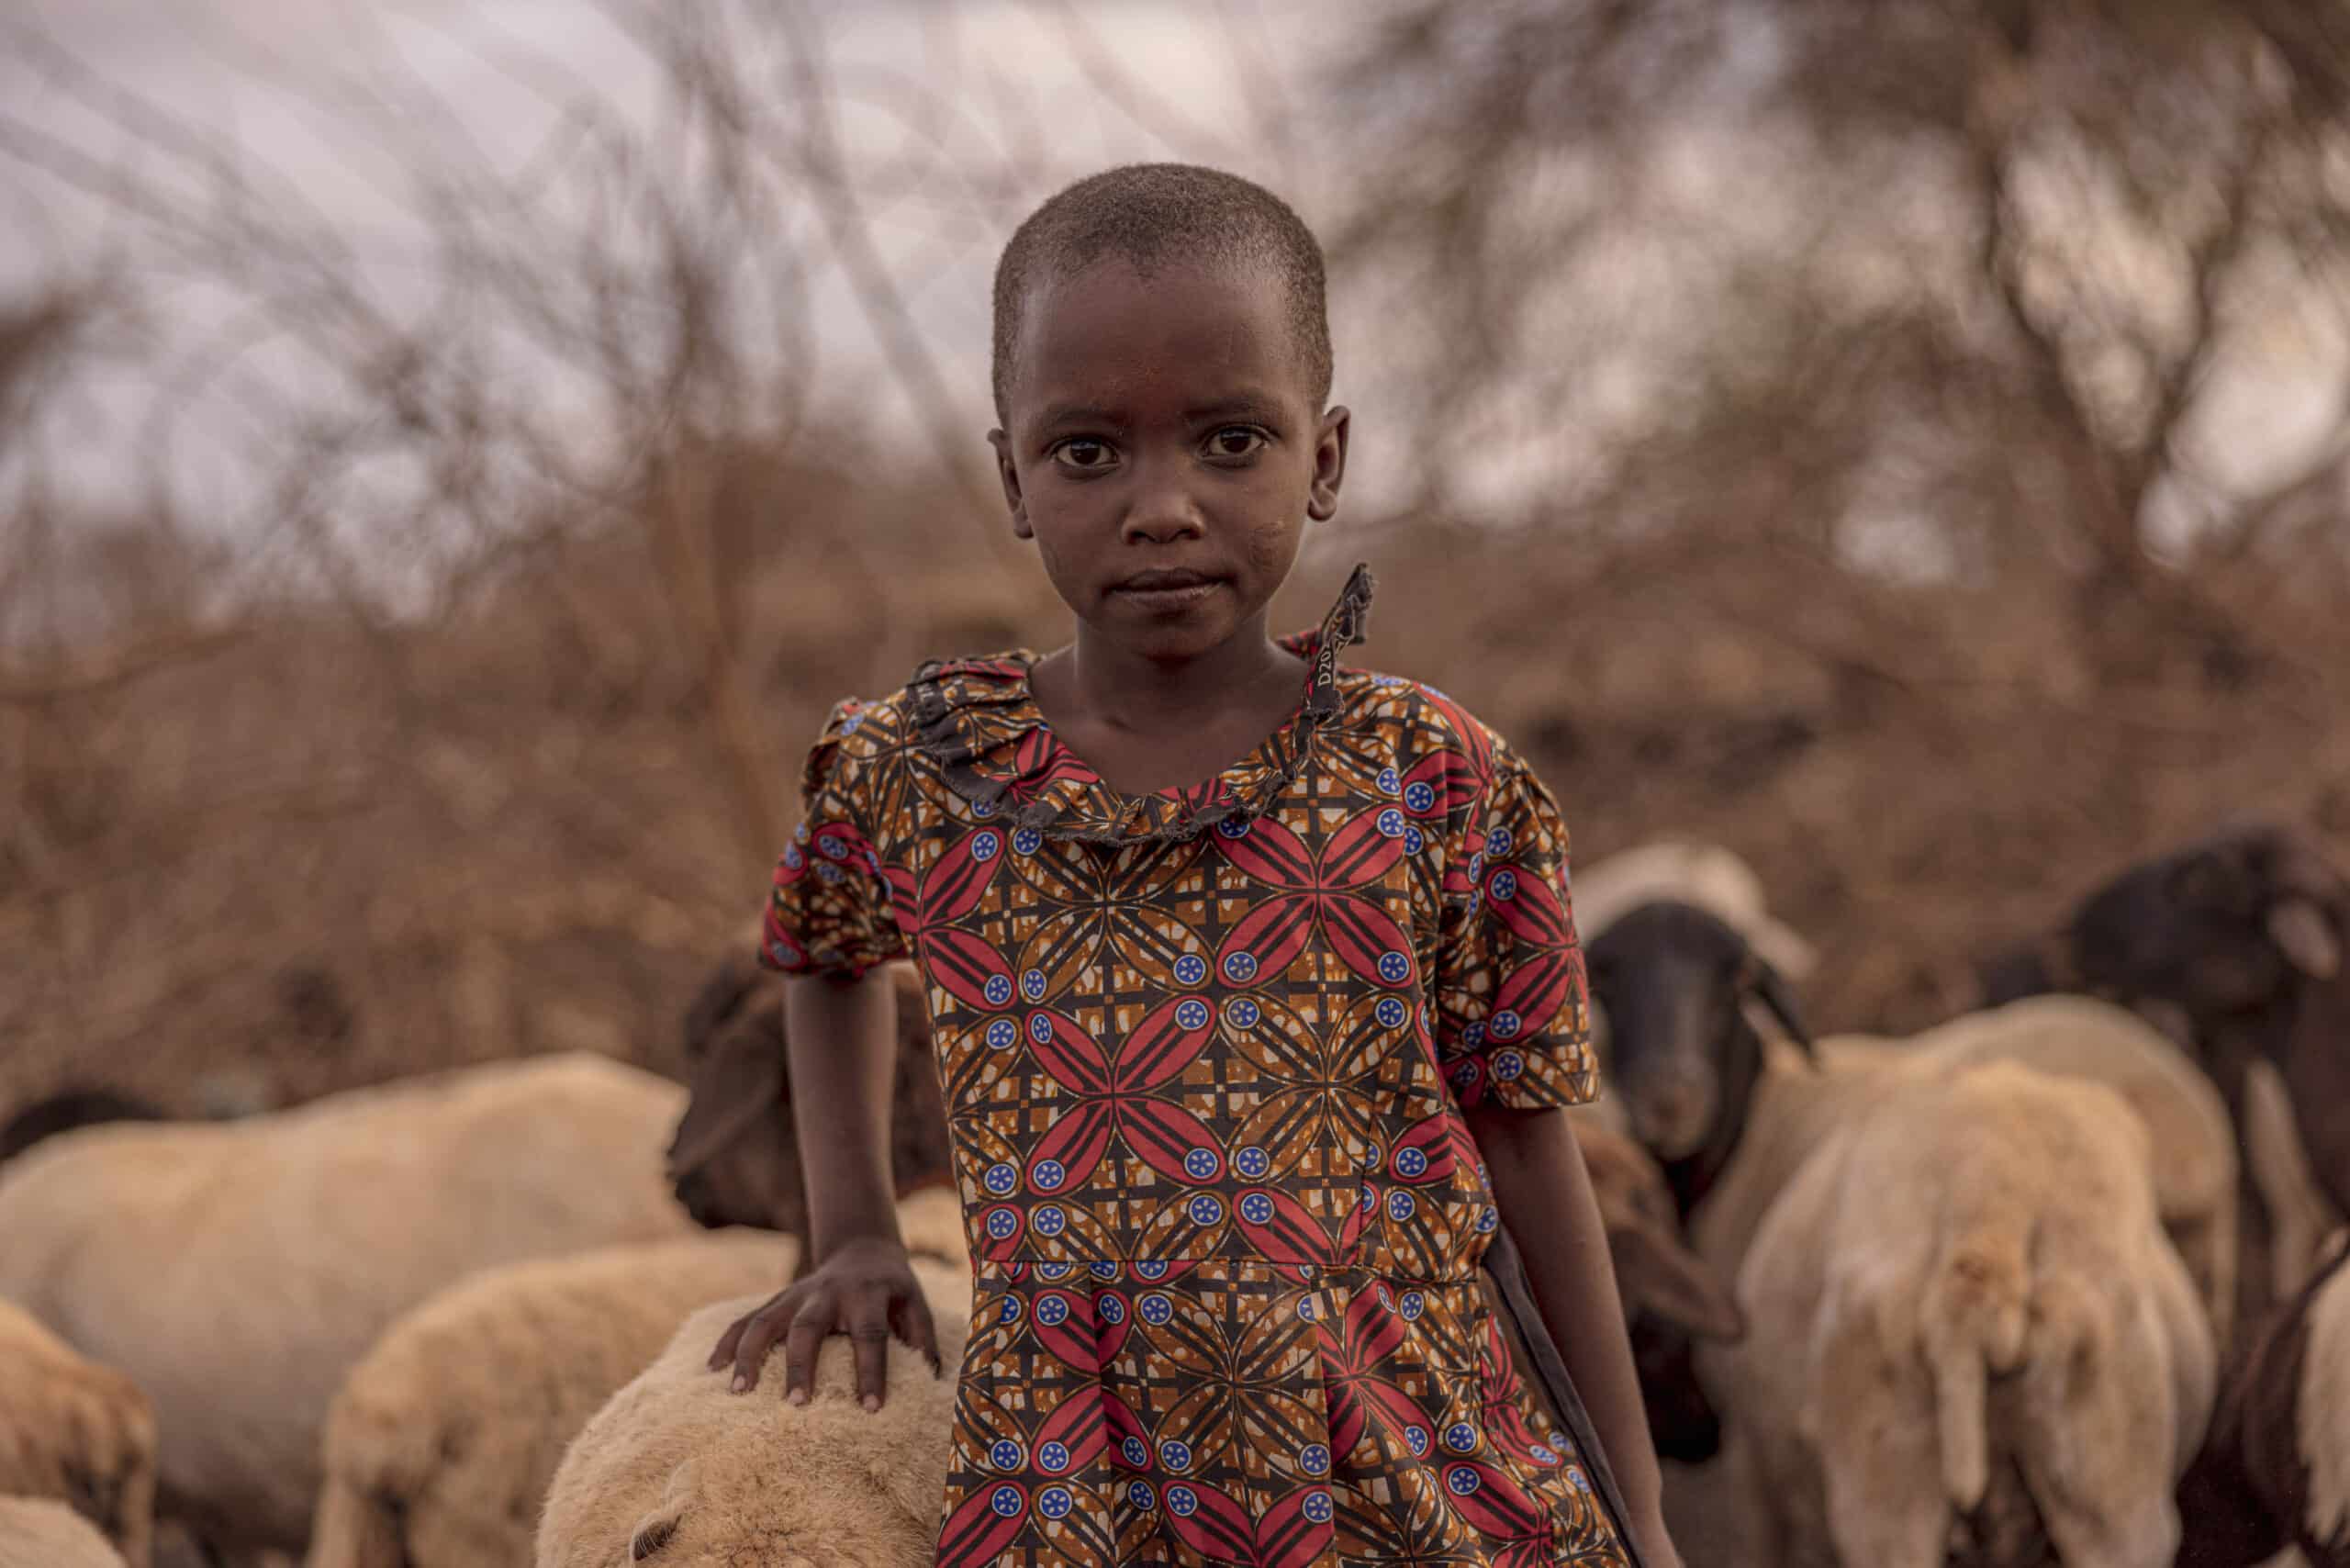 Ein kleines Kind in einem bunten Kleid steht inmitten einer Schafherde in einer ländlichen Umgebung, mit ruhigem Gesichtsausdruck und spärlicher Vegetation im Hintergrund. © Fotografie Tomas Rodriguez